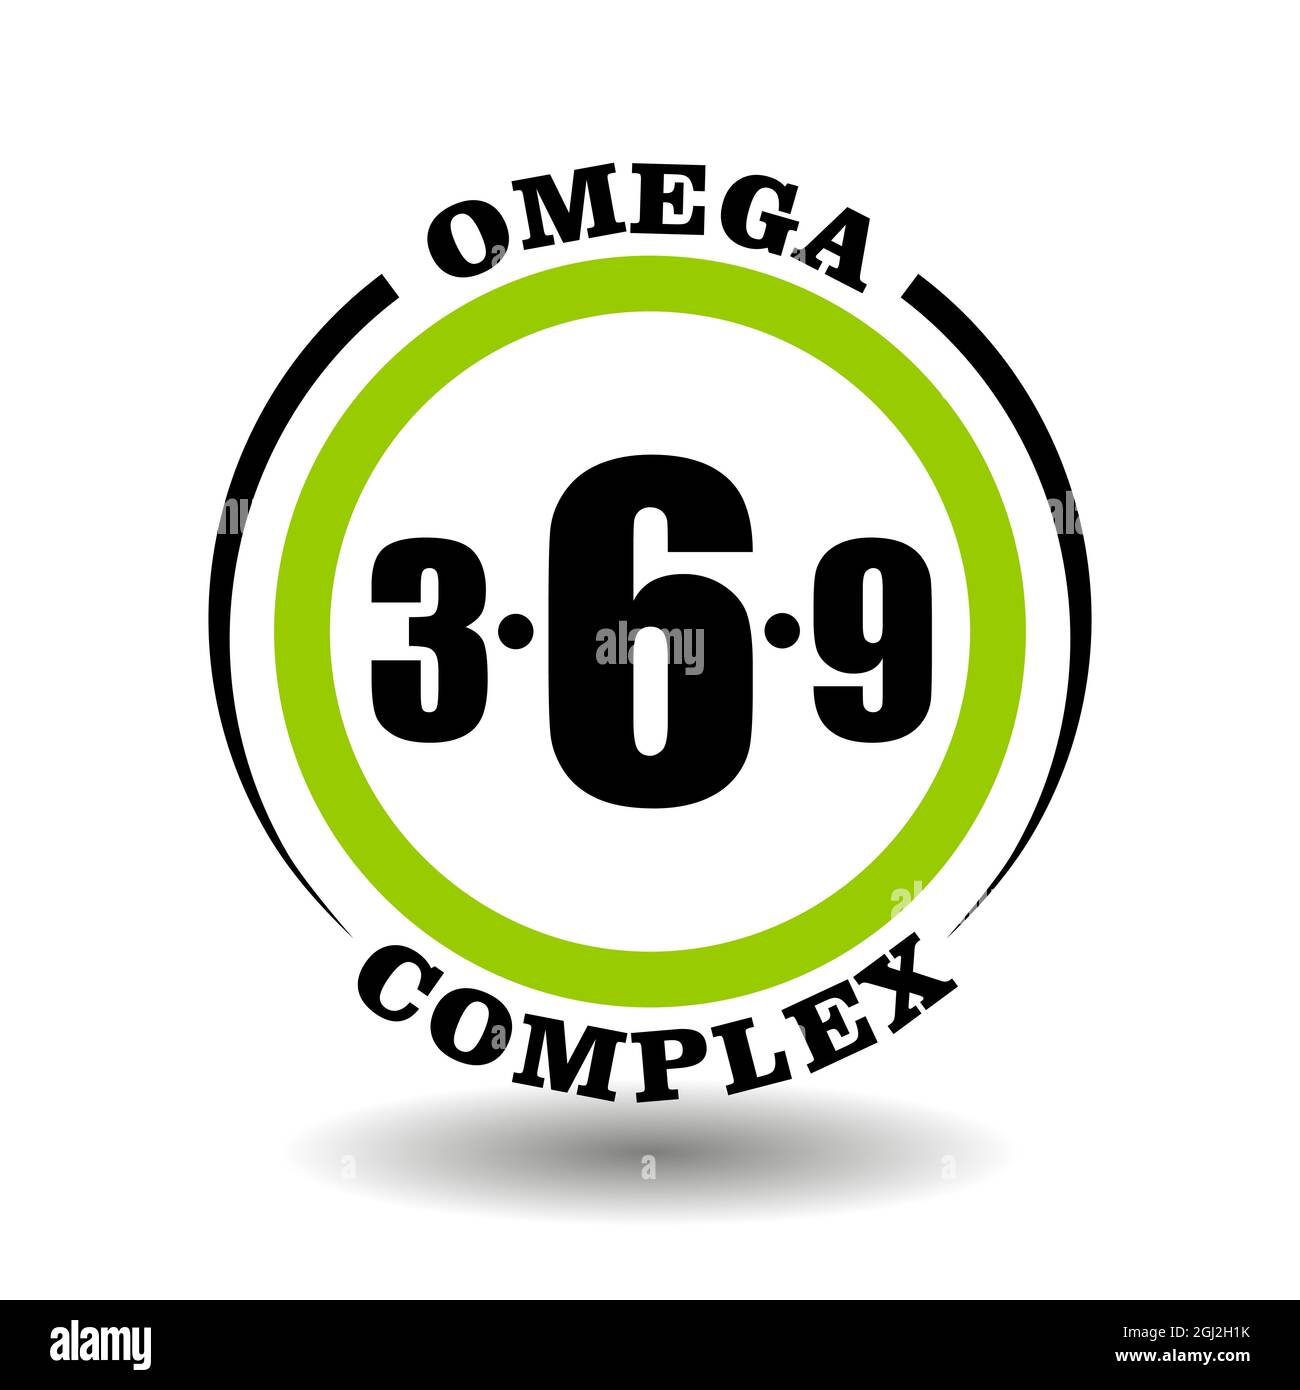 Cerchio vettore icona Omega complesso per confezione prodotto segni contengono 3, 6, 9 omega ingrediente in sano cibo pittogramma logo con olio di pesce simbolo Illustrazione Vettoriale